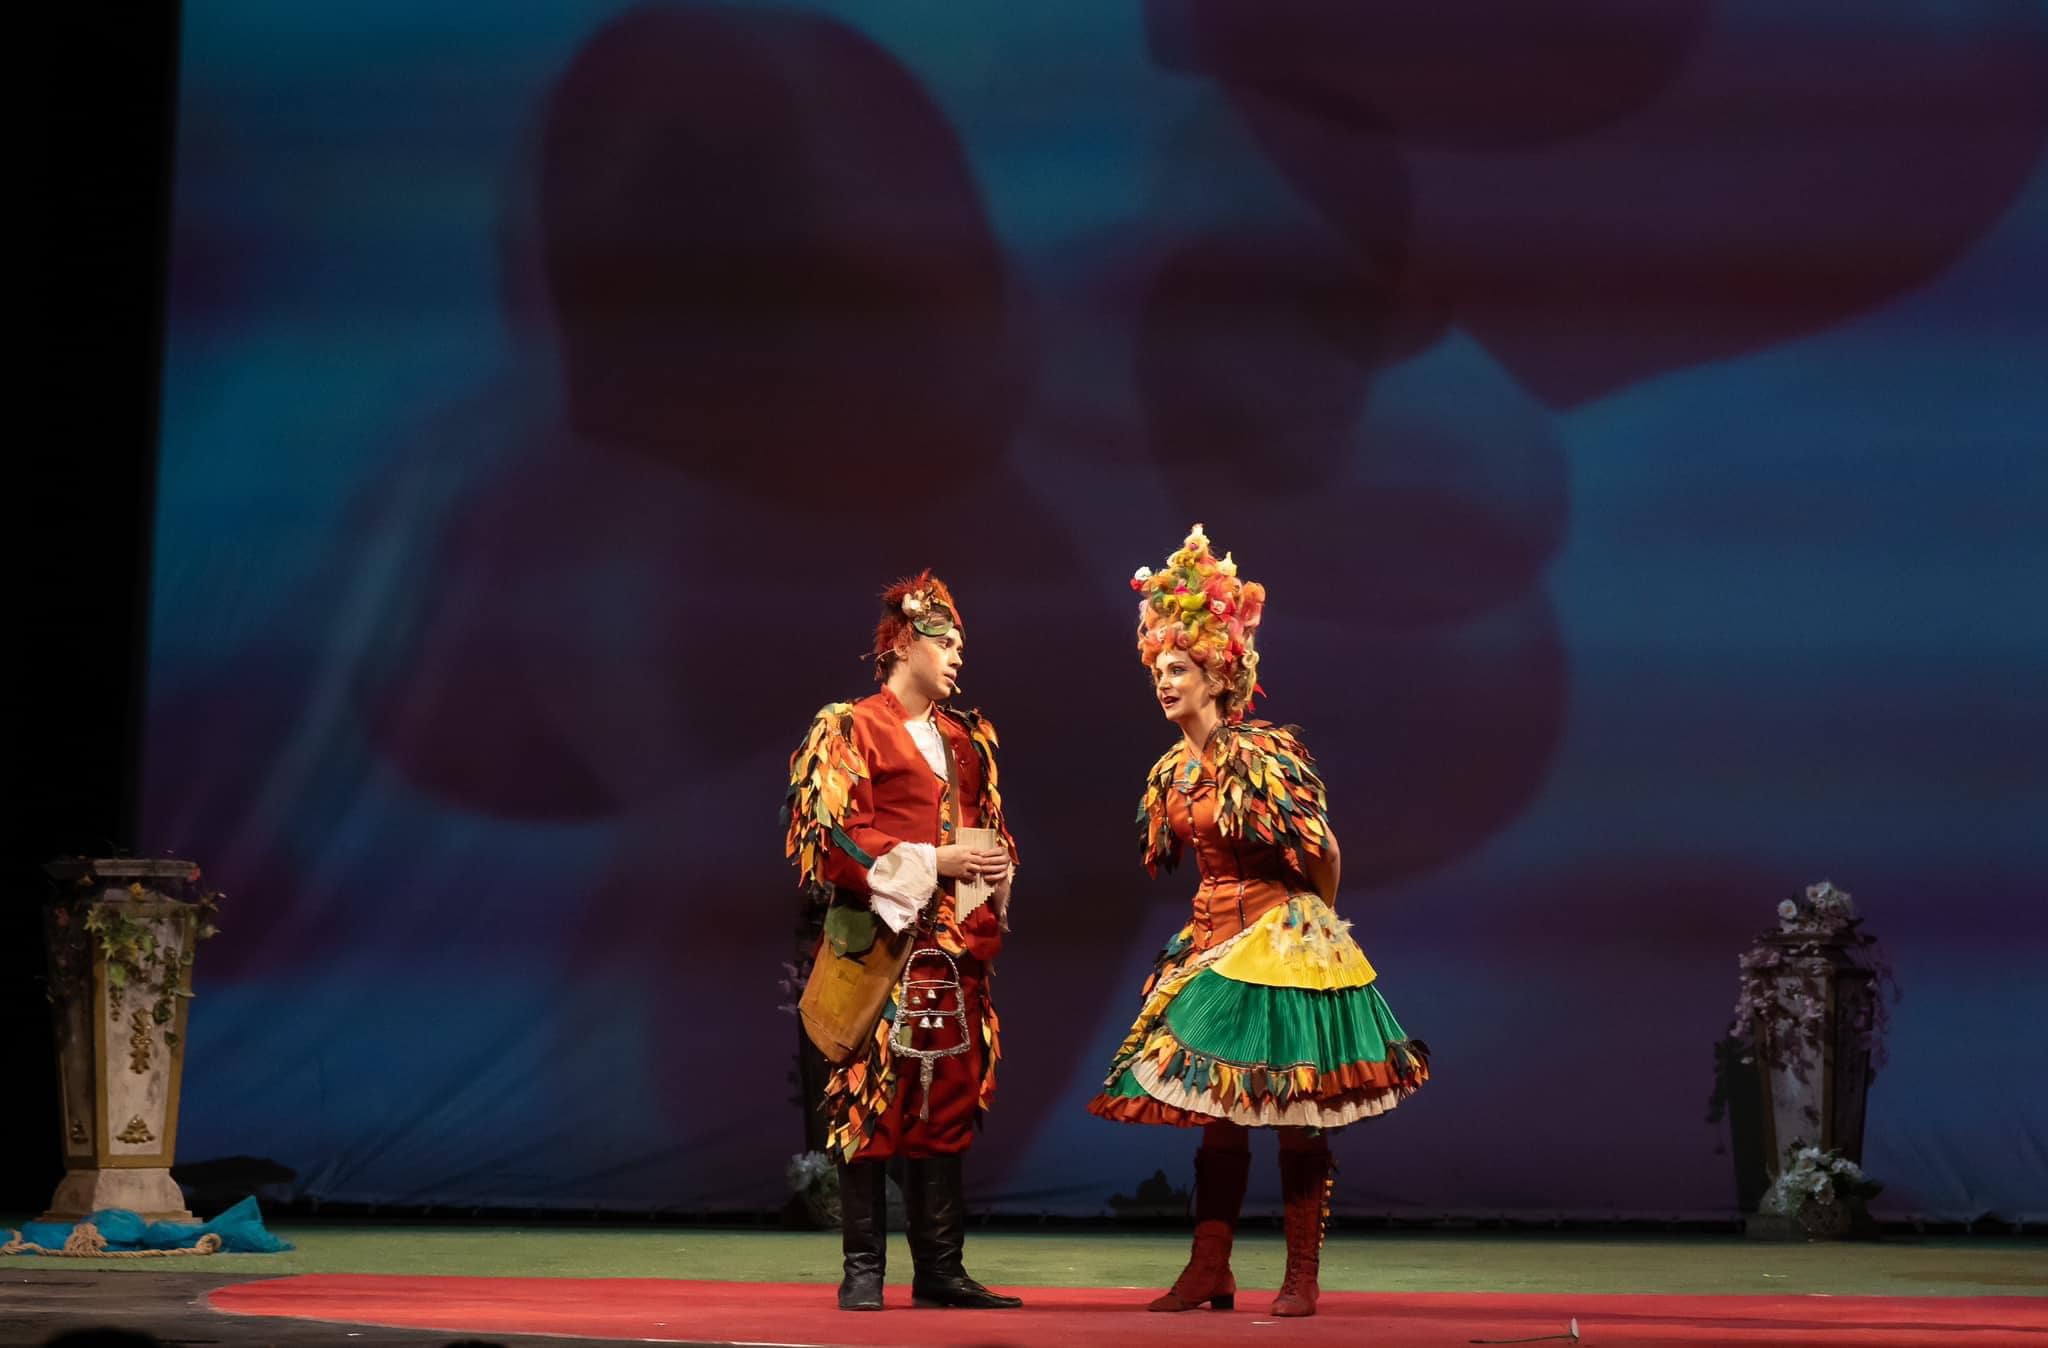 Photo: ВЪЛШЕБНАТА ФЛЕЙТА опера от Волфганг Амадеус Моцарт - адаптирана за деца